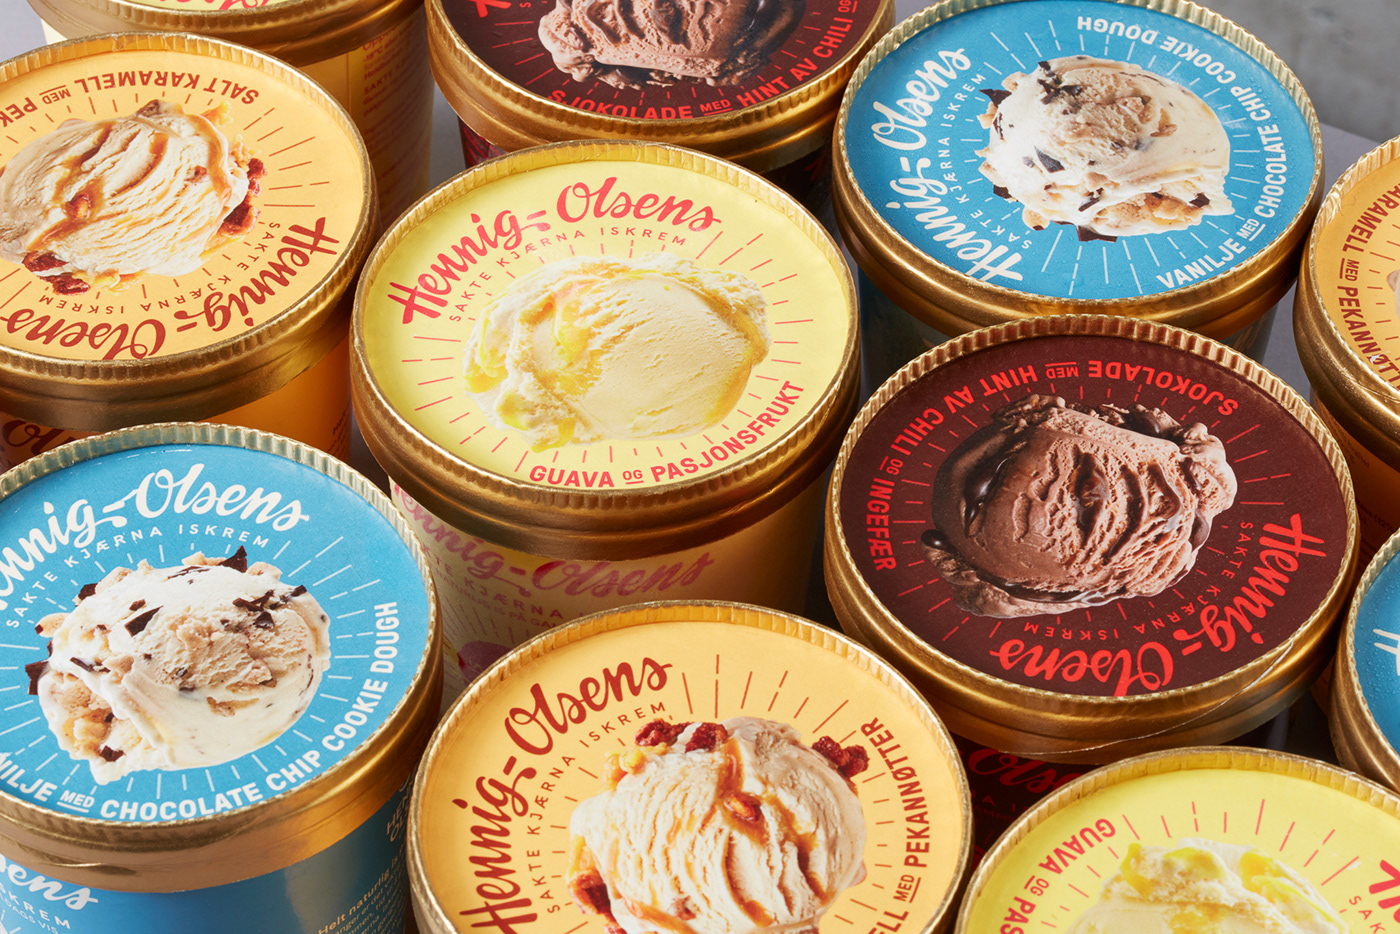 ice cream Retro Packaging packaging design Hennig-Olsen nostalgic colorful anti dessert sakte kjærna